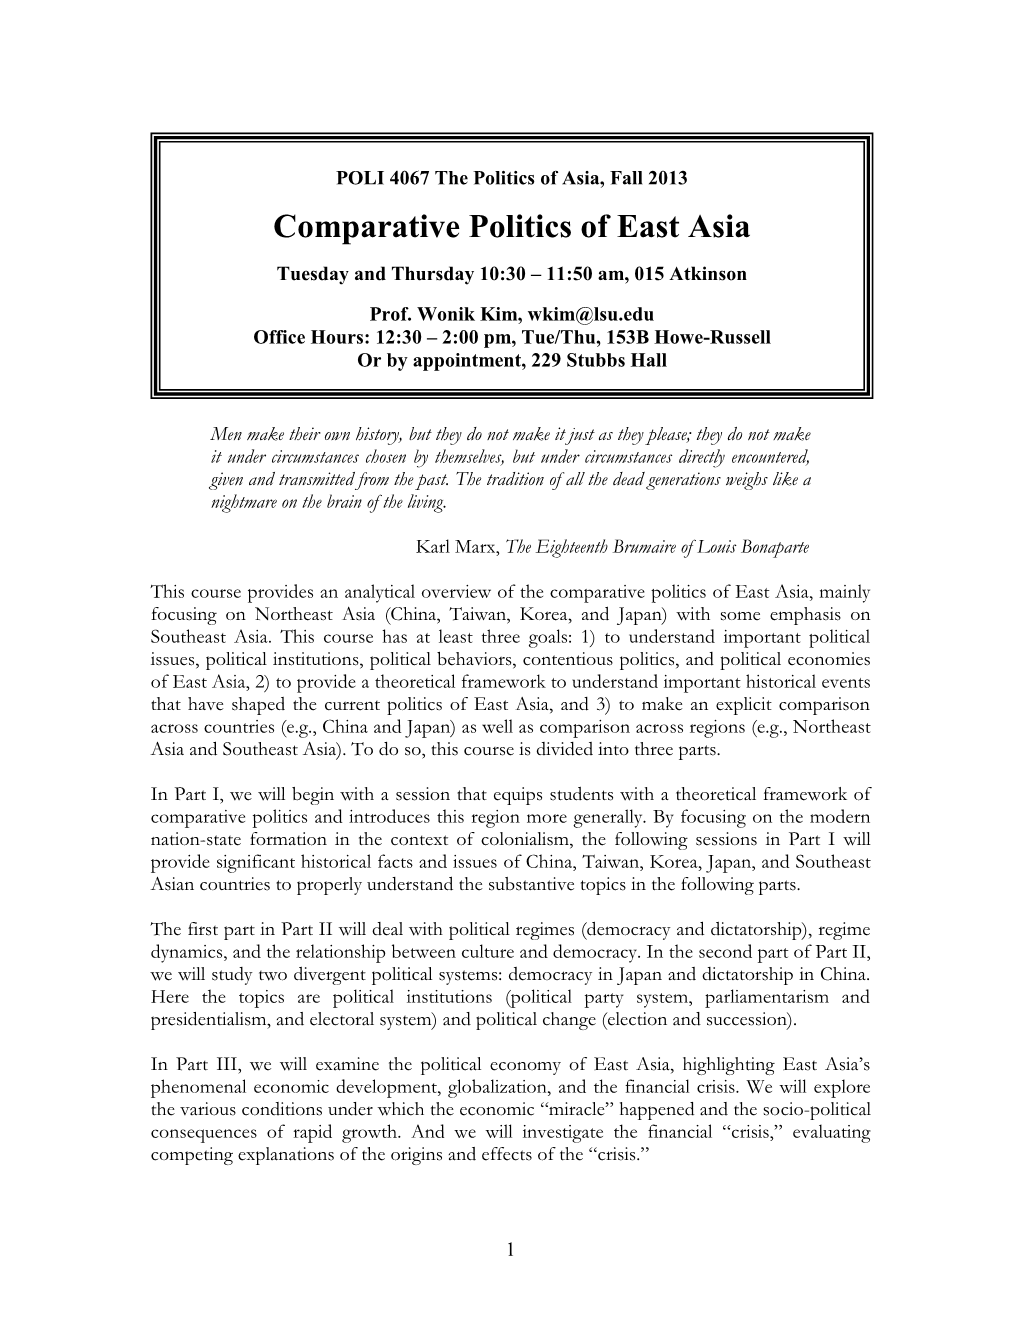 POLI 4067: Comparative Politics of East Asia, Fall 2007